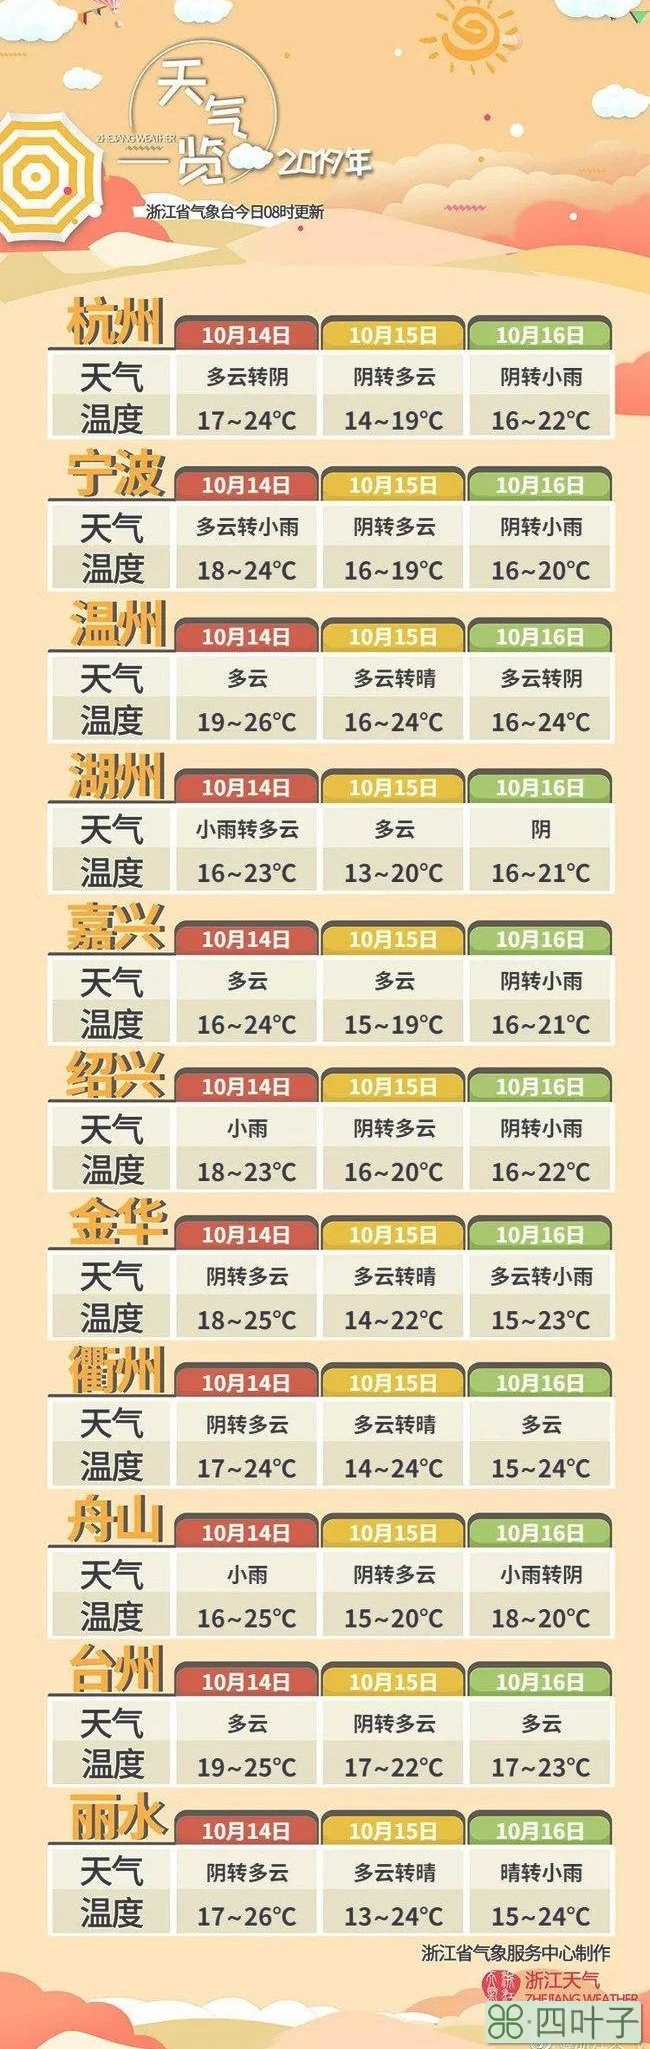 未来杭州40天天气走势杭州未来天气预报40天